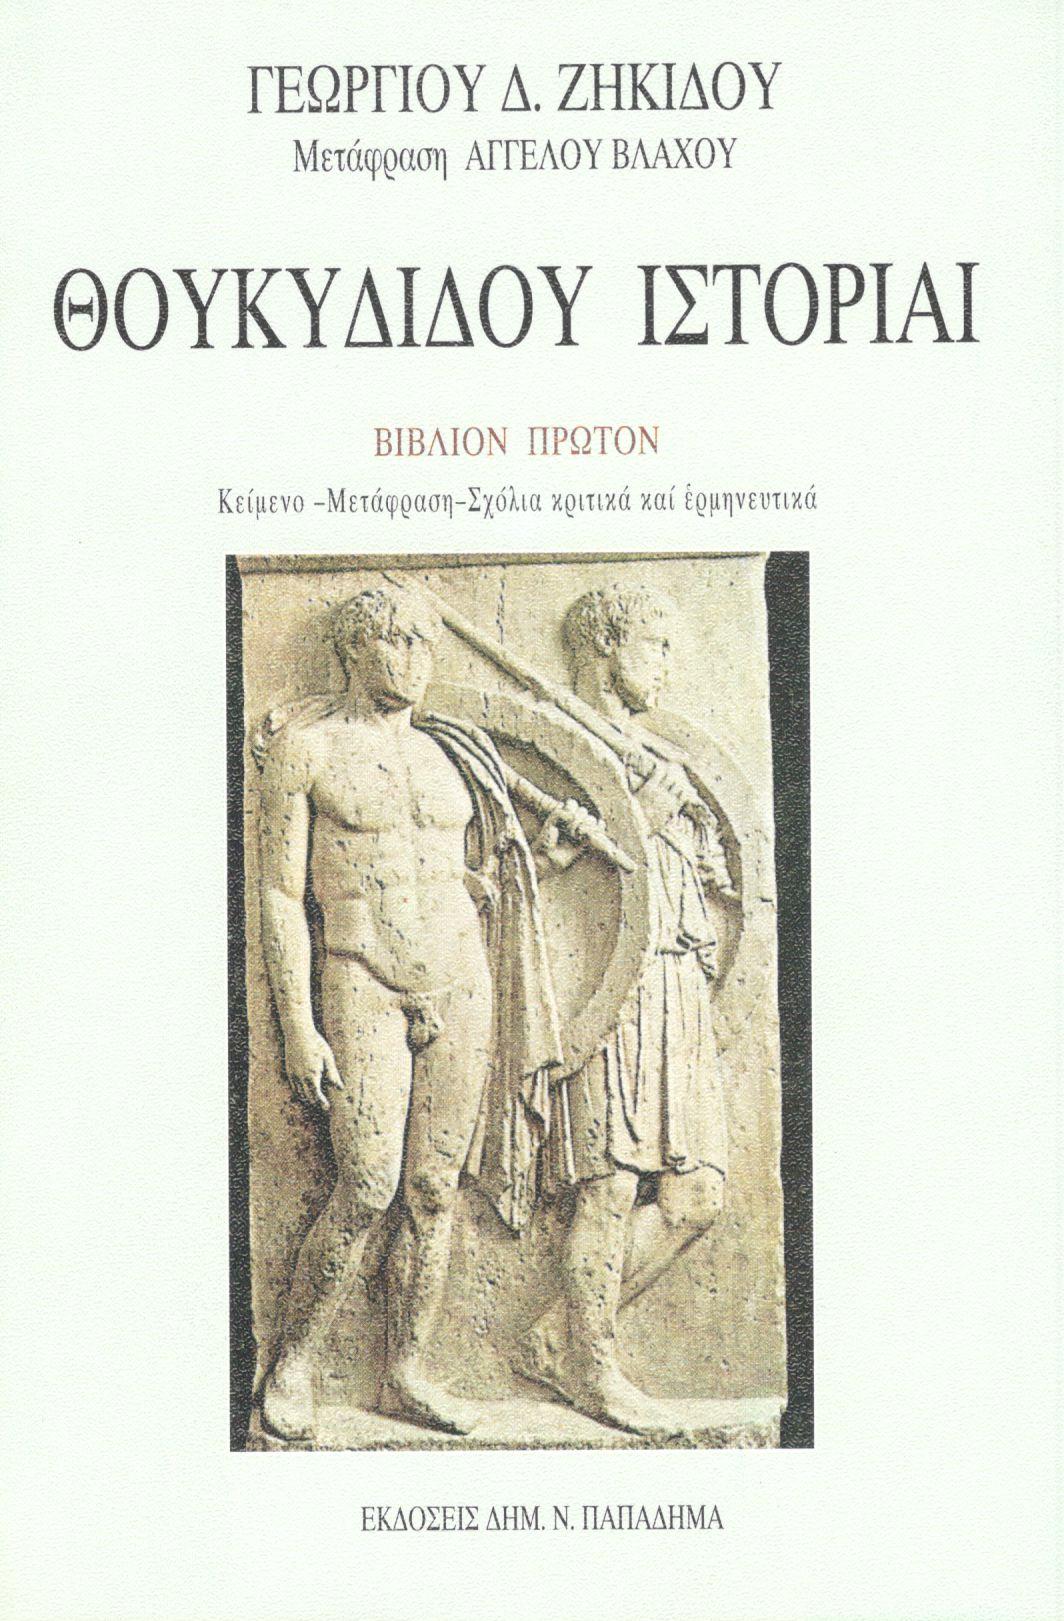 Θουκυδίδου ιστορίαι. Ο Πελοποννησίων και Αθηναίων πόλεμος, Βιβλίο Πρώτο